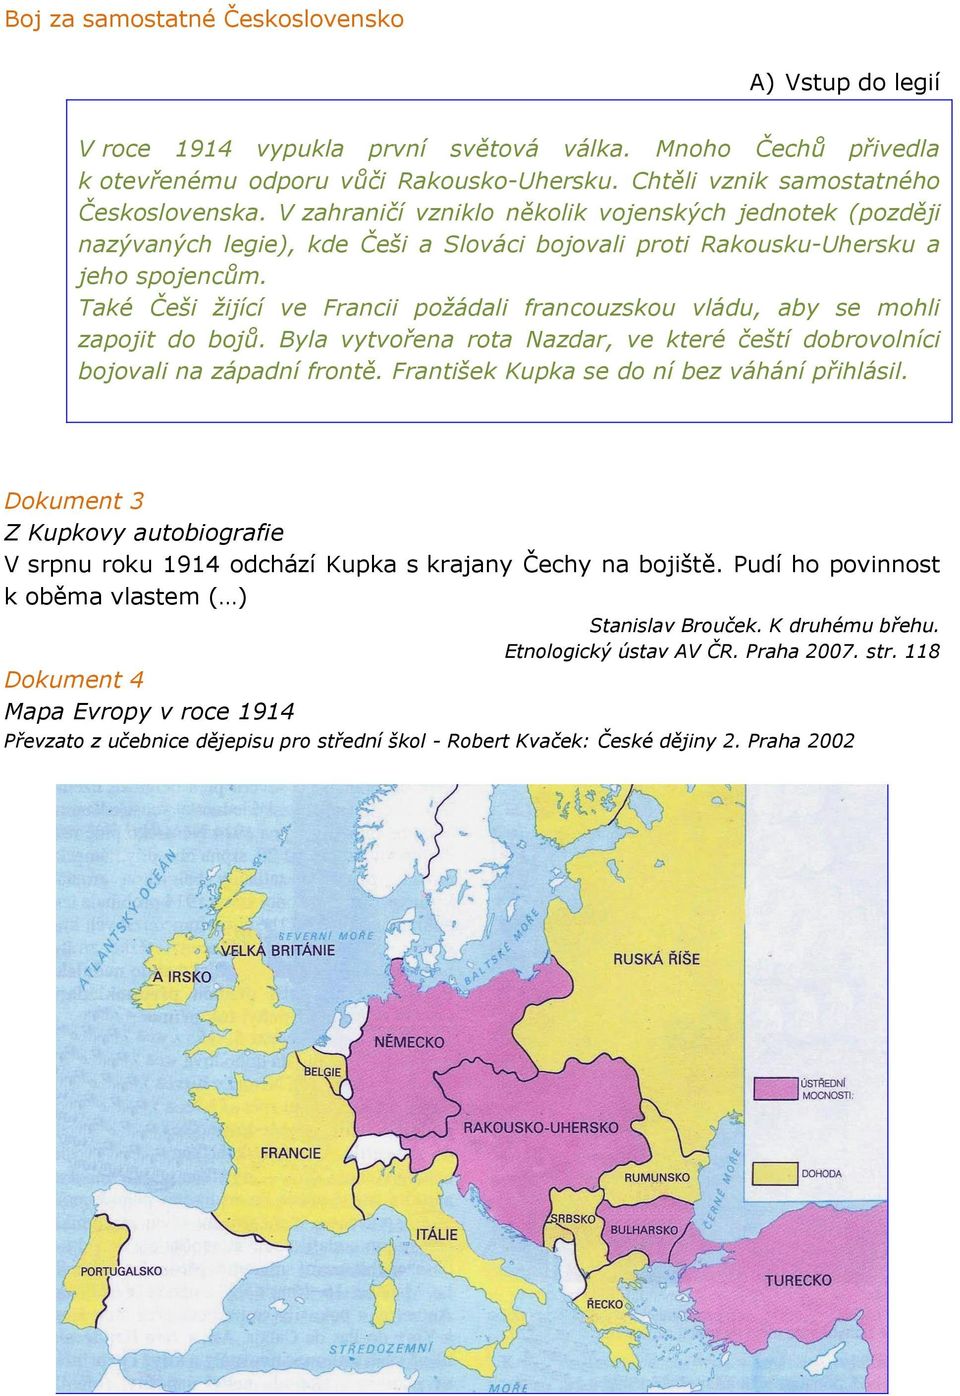 Také Češi žijící ve Francii požádali francouzskou vládu, aby se mohli zapojit do bojů. Byla vytvořena rota Nazdar, ve které čeští dobrovolníci bojovali na západní frontě.